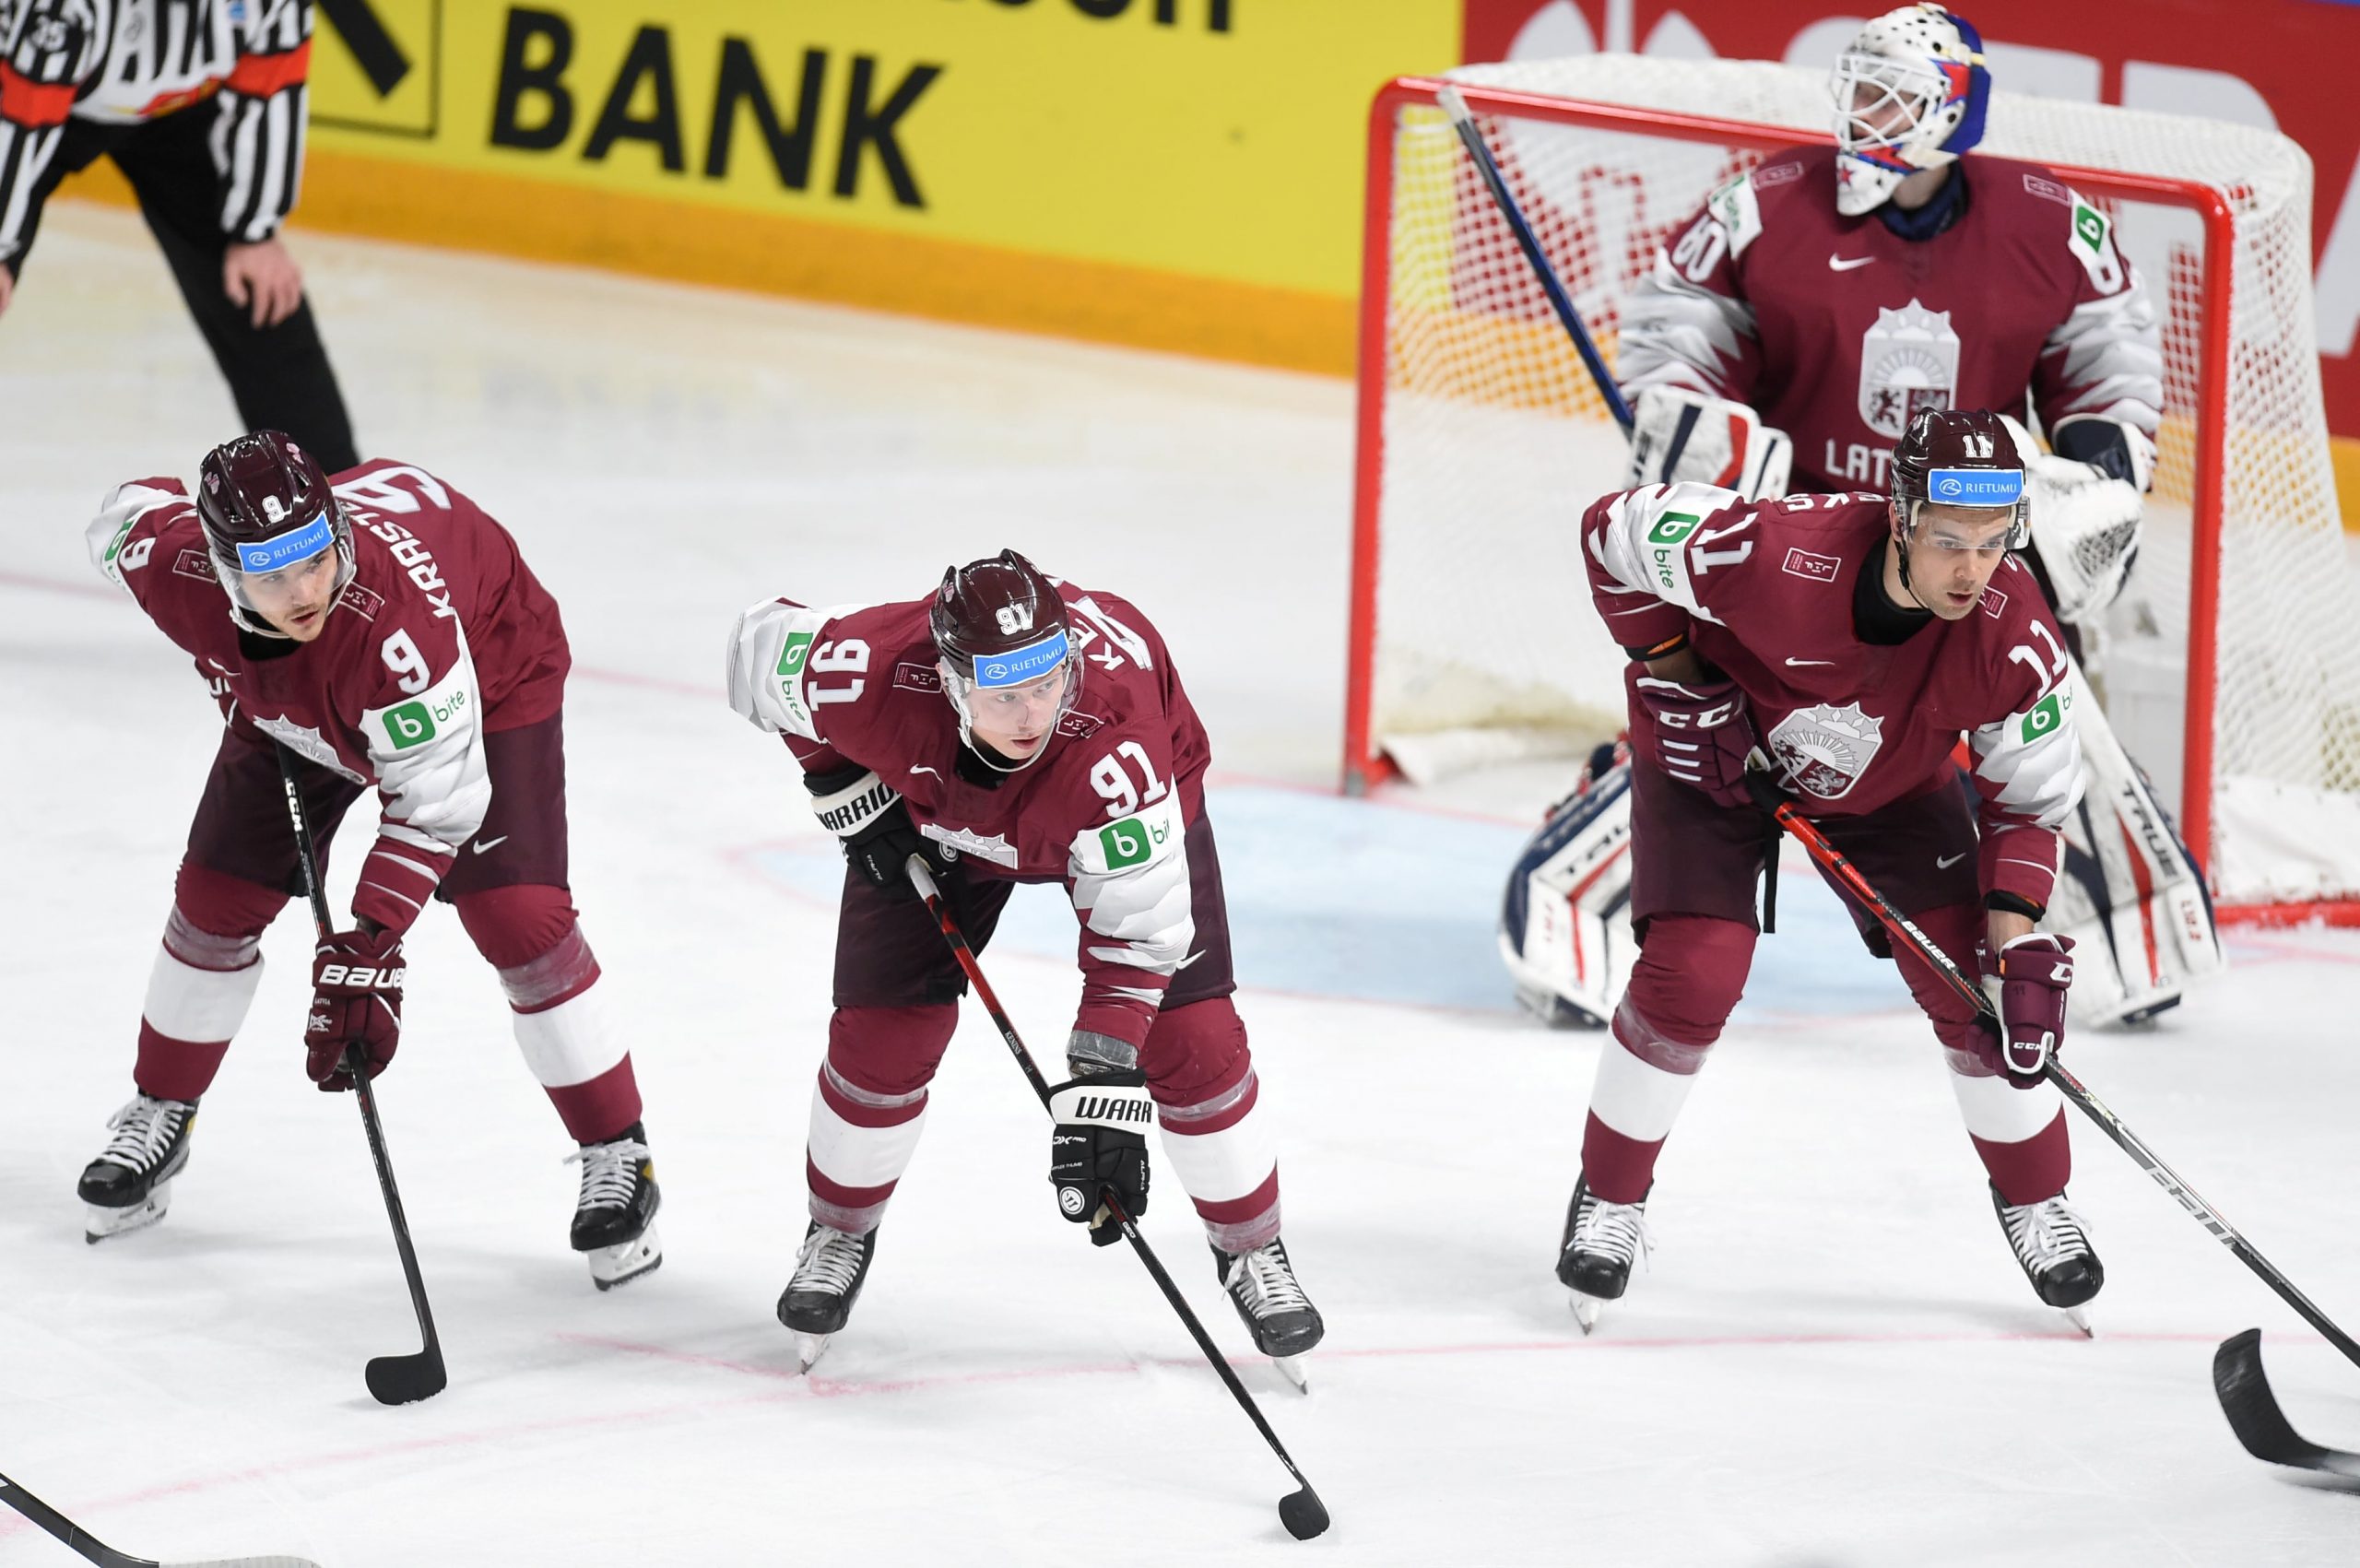 Situācija, kad no pašiem vairs maz kas atkarīgs, – Latvijai “play-off” sākas jau pret Somiju